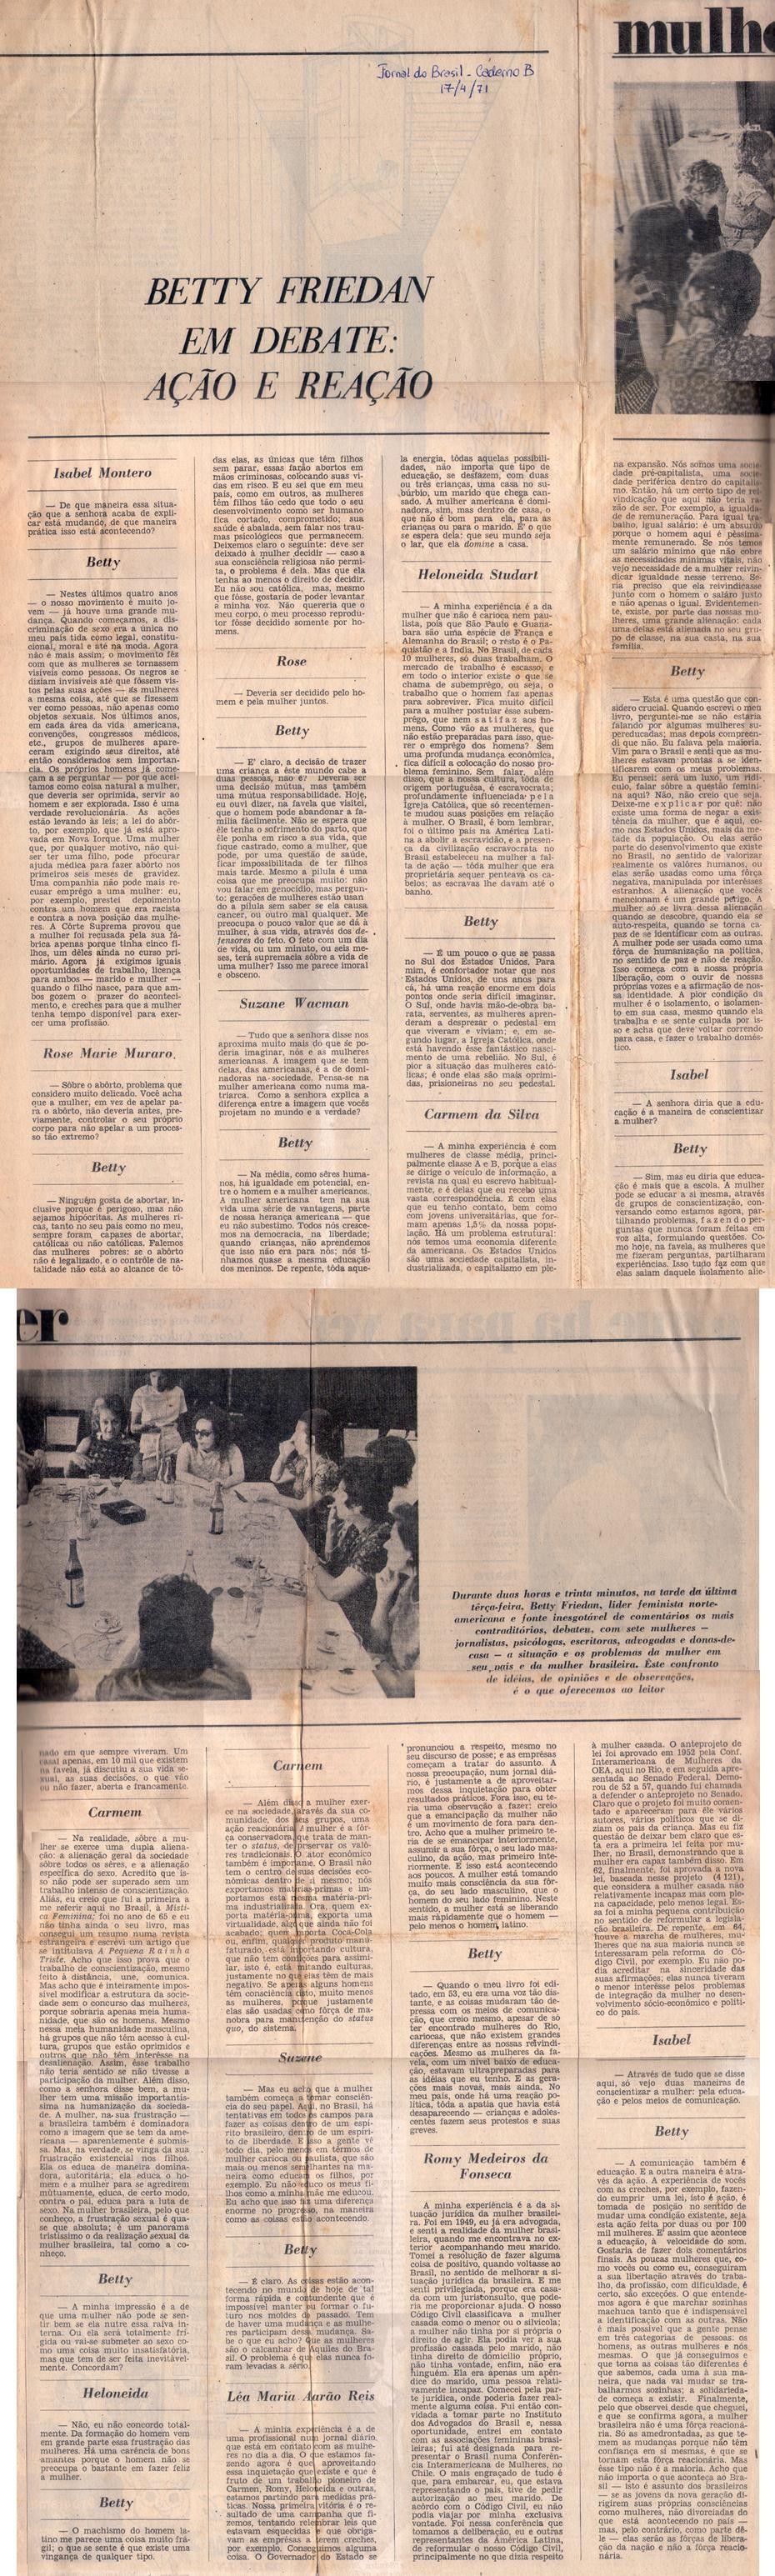 17 de Abril de 1971 - Jornal do Brasil. Betty Friedan em debate: ação e reação.